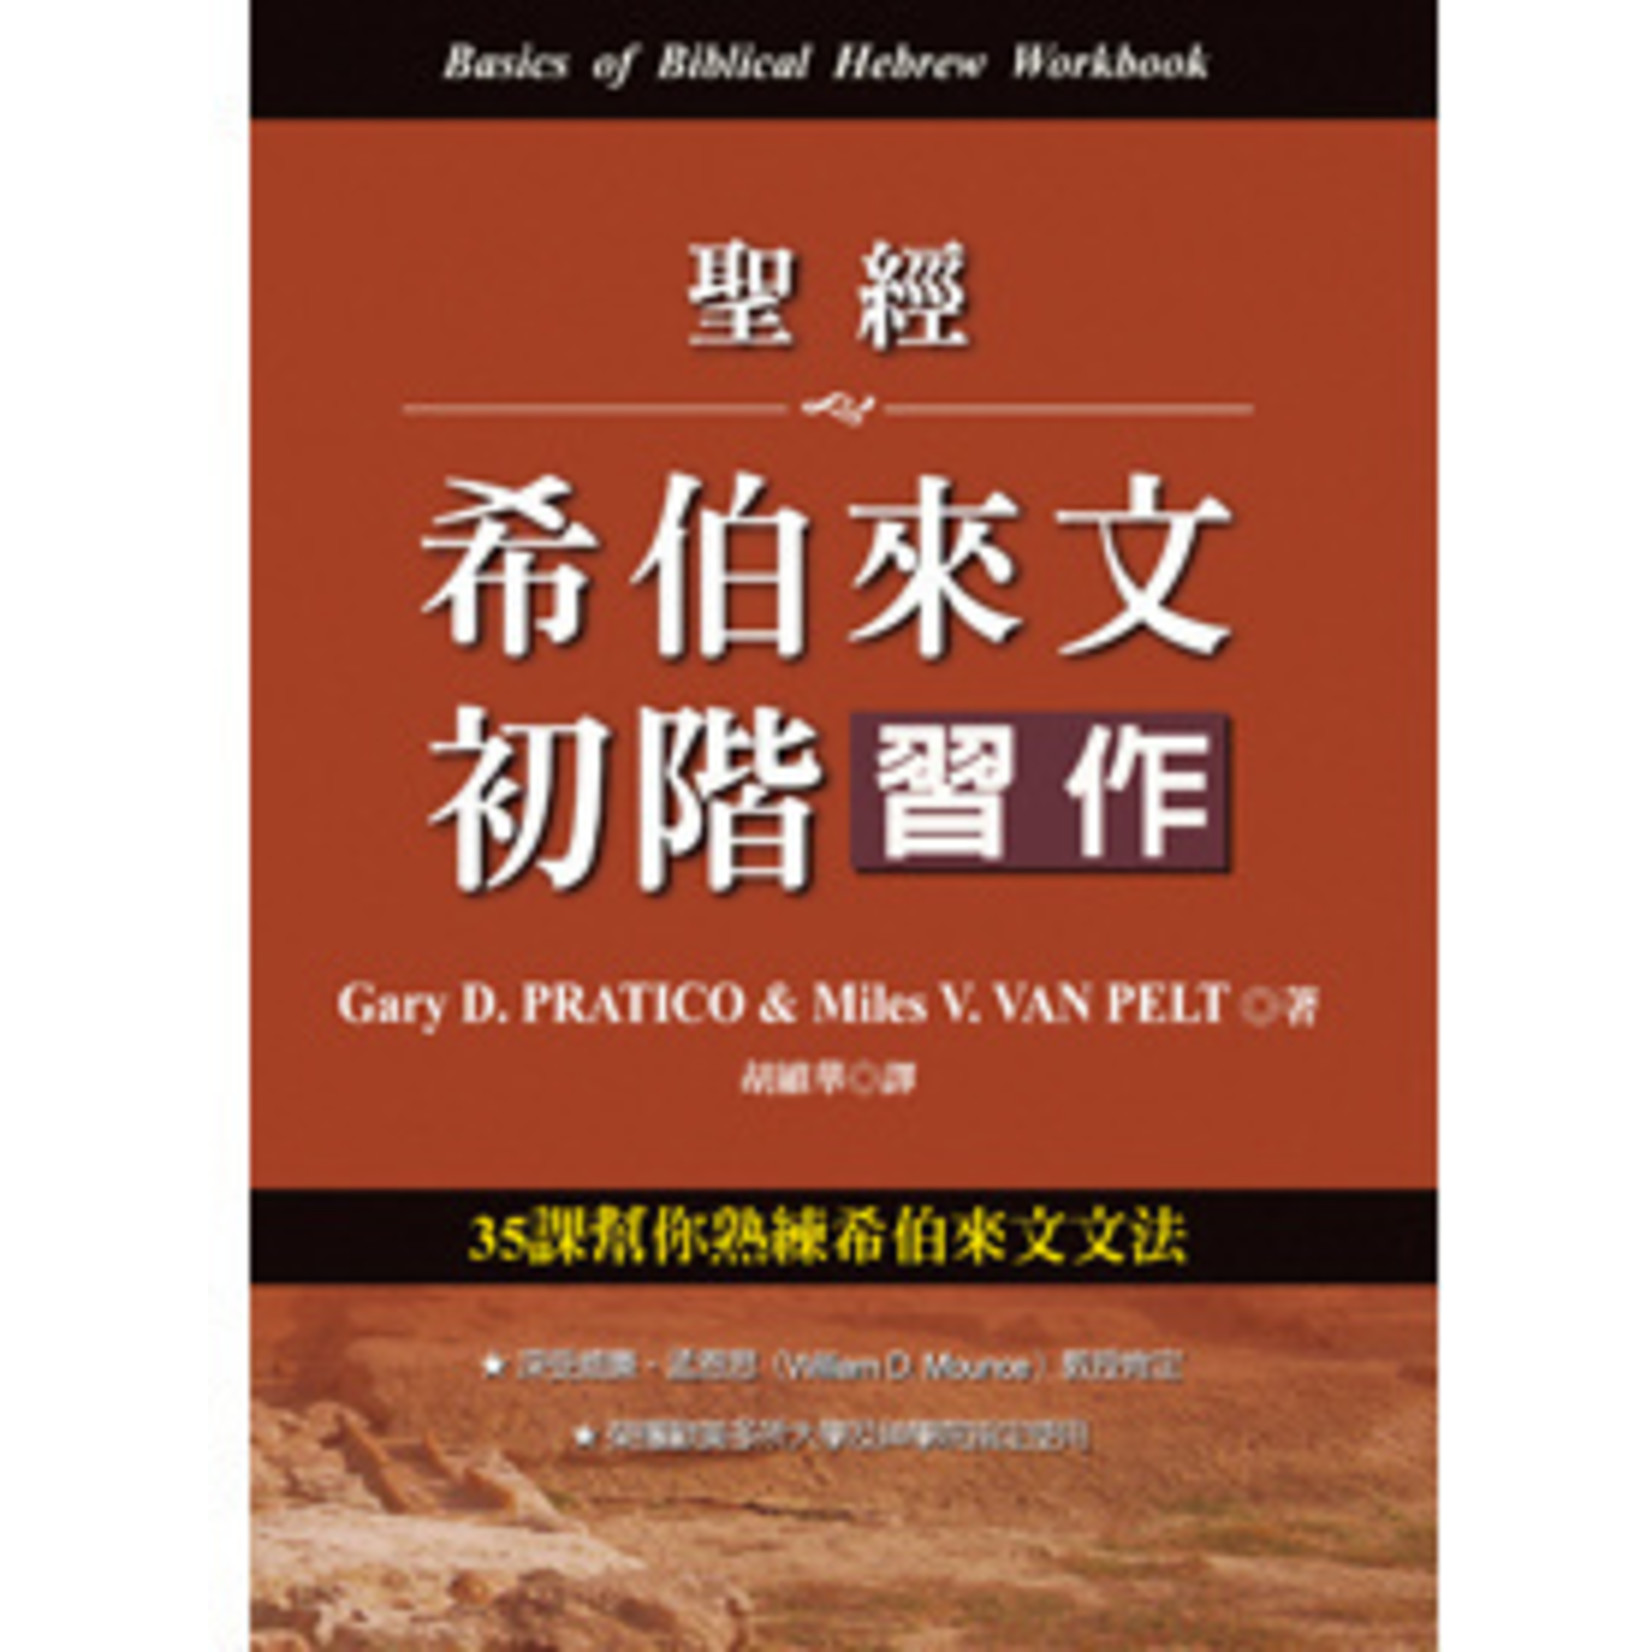 台灣中華福音神學院 China Evangelical Seminary 聖經希伯來文初階：習作 Basics of Biblical Hebrew Workbook